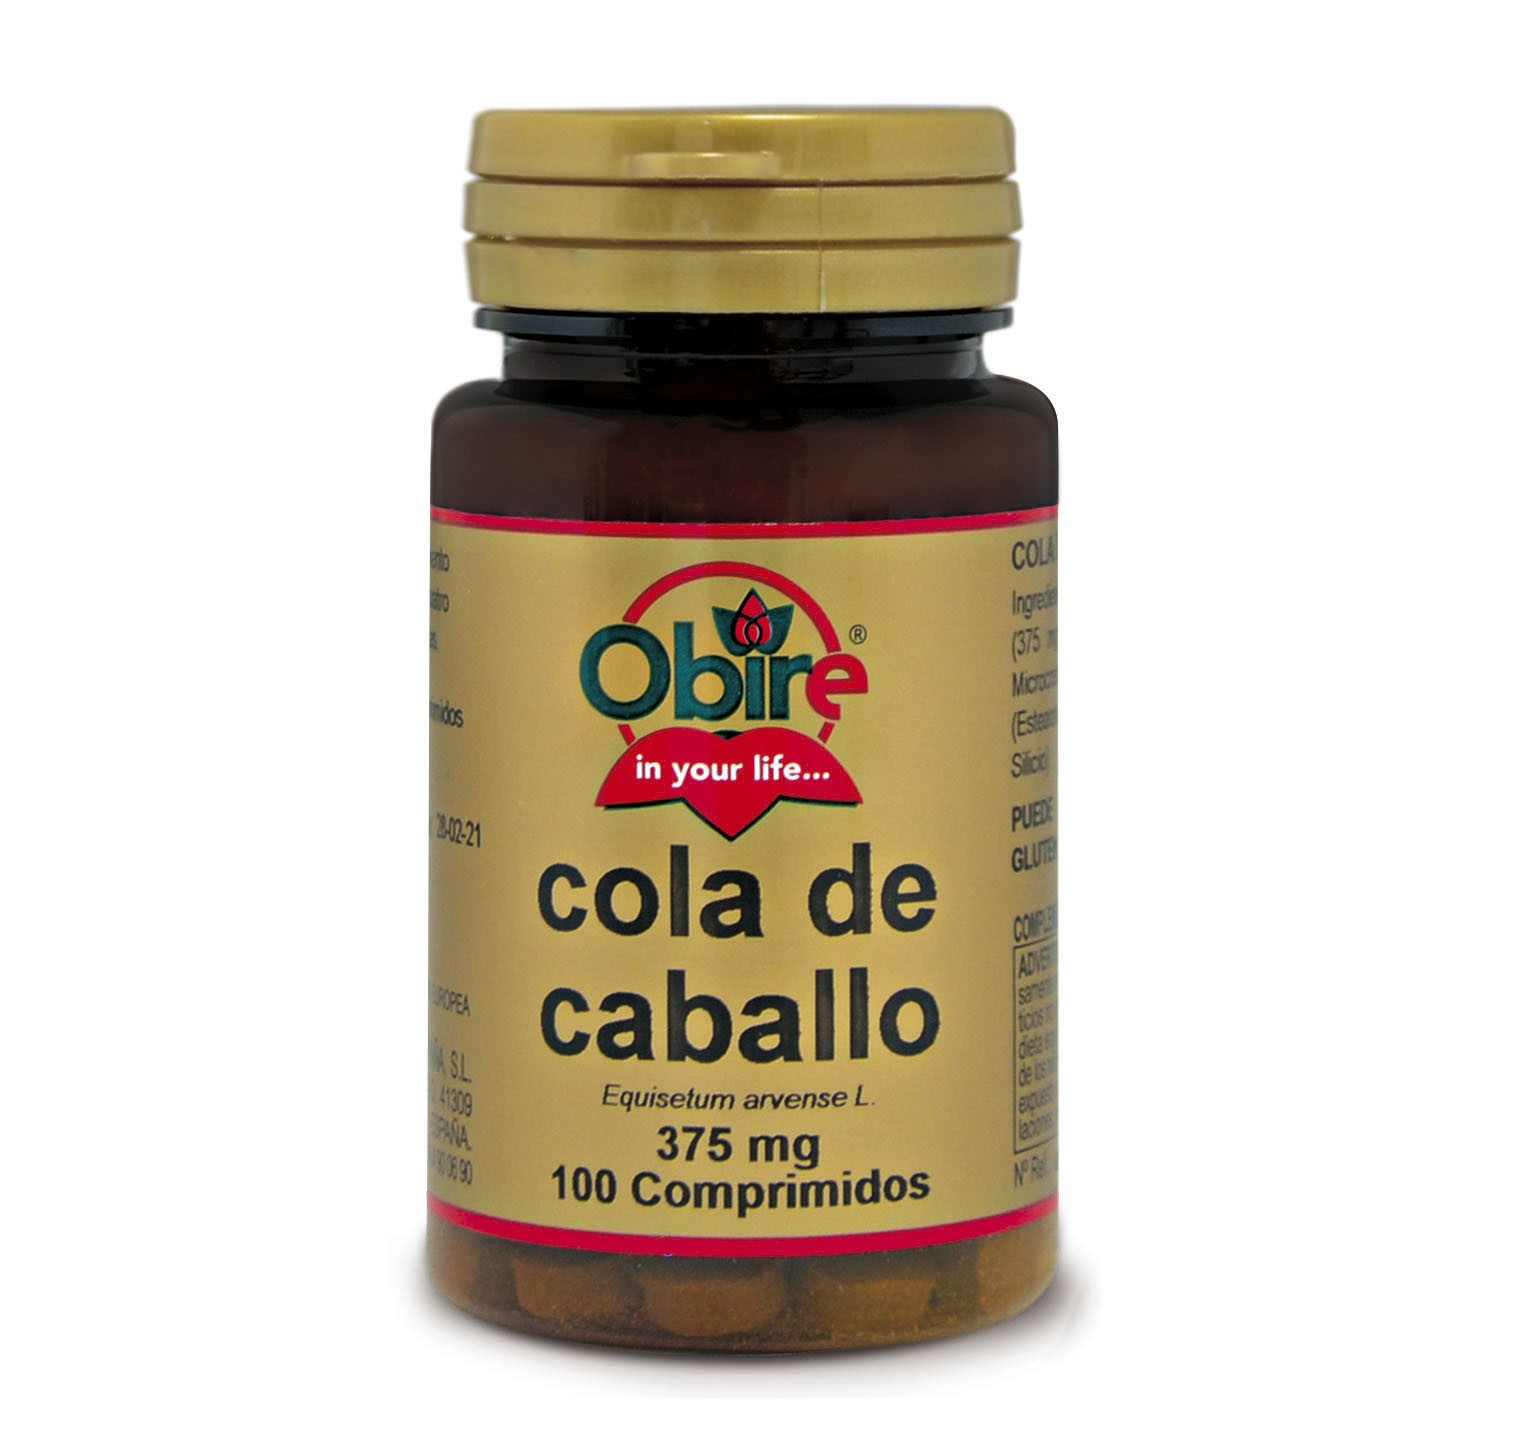 Obire Cola de Caballo 375 mg, 100 Tabletas.